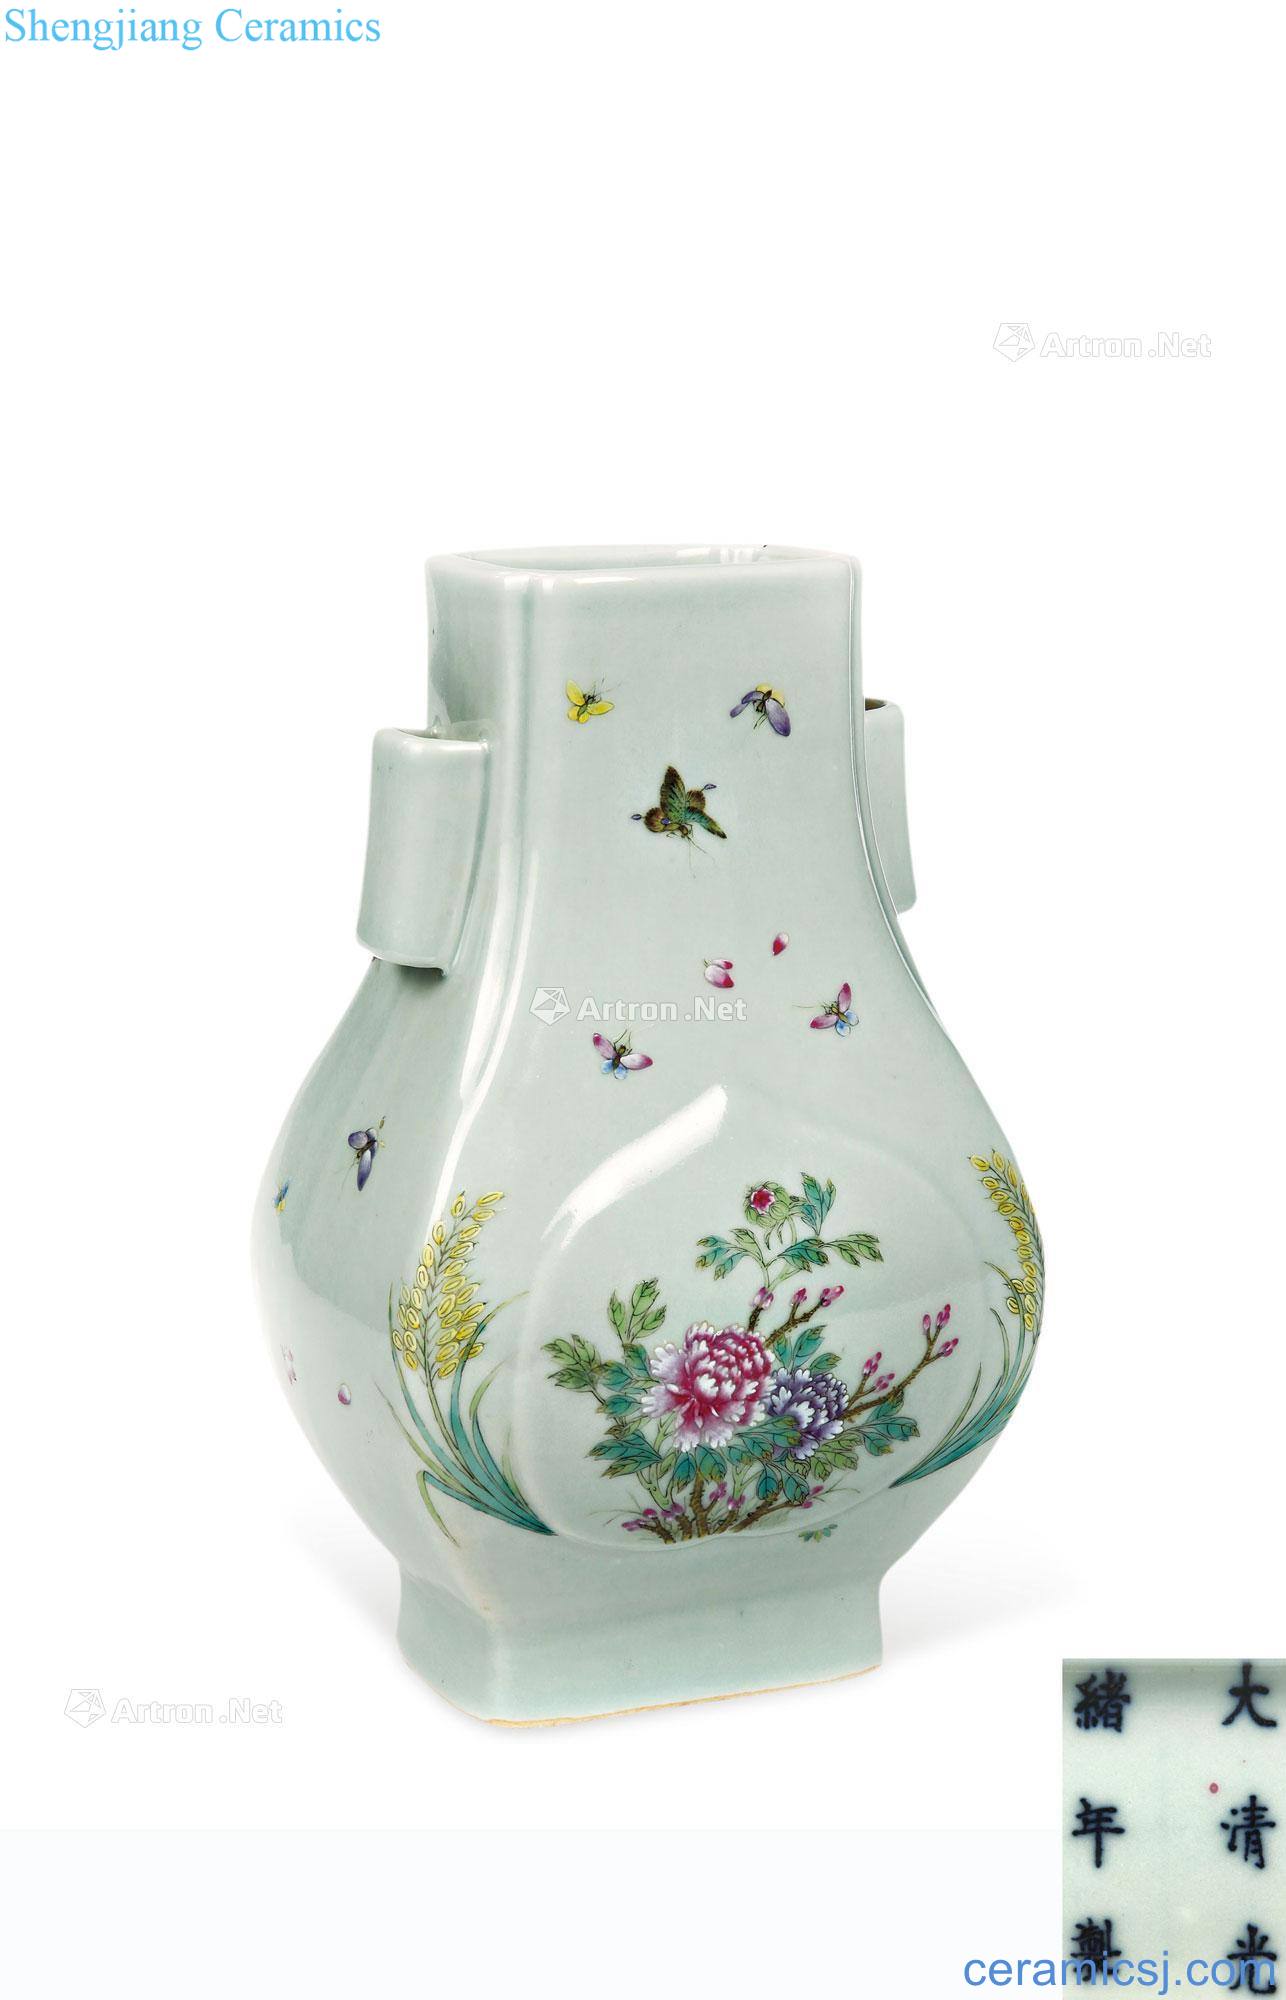 Qing guangxu Pea green glaze enamel flower vase with a butterfly tattoo penetration